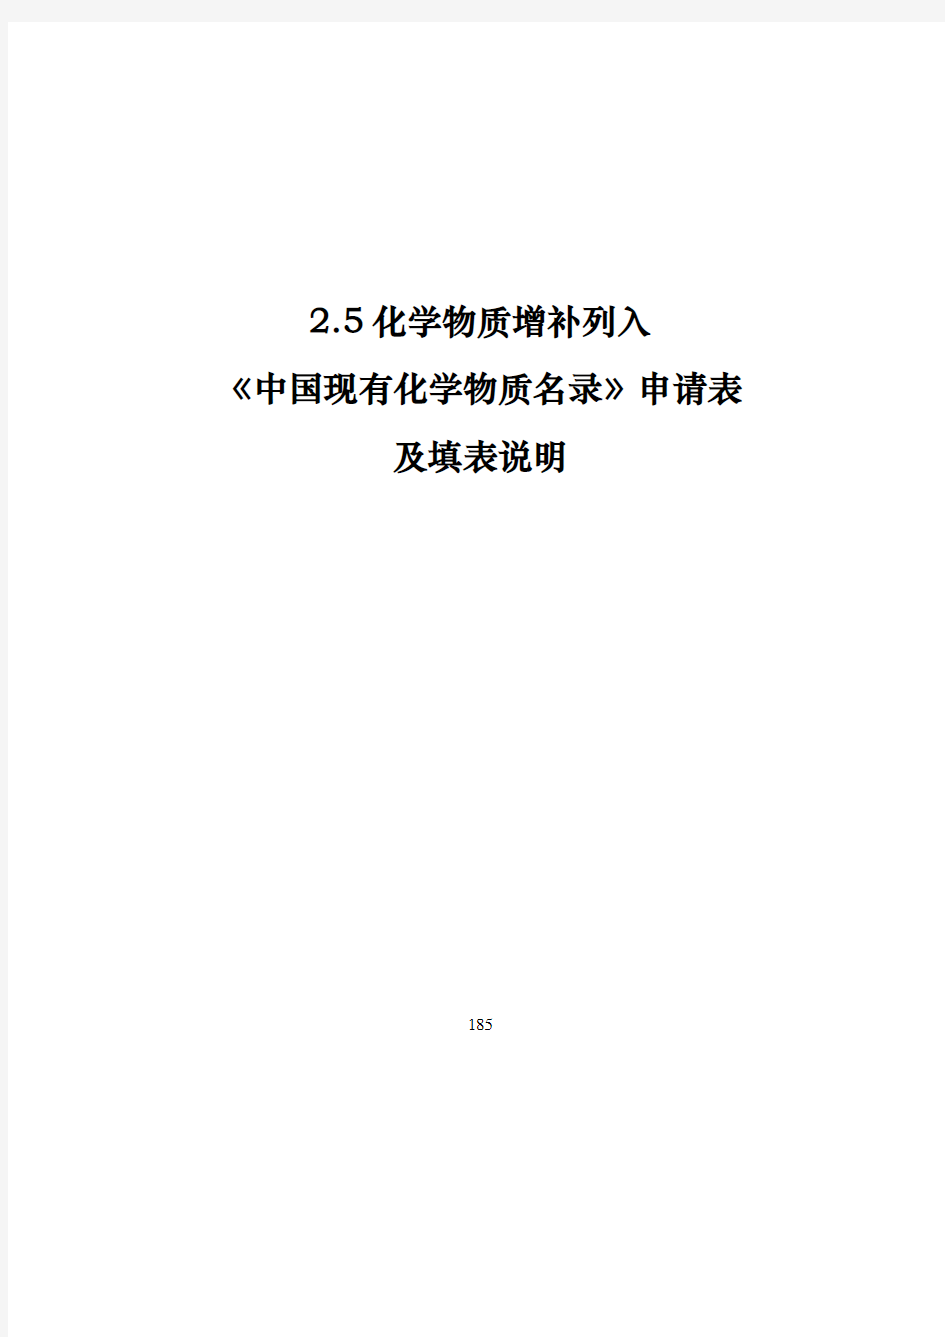 化学物质增补列入《中国现有化学物质名录》申请表2020